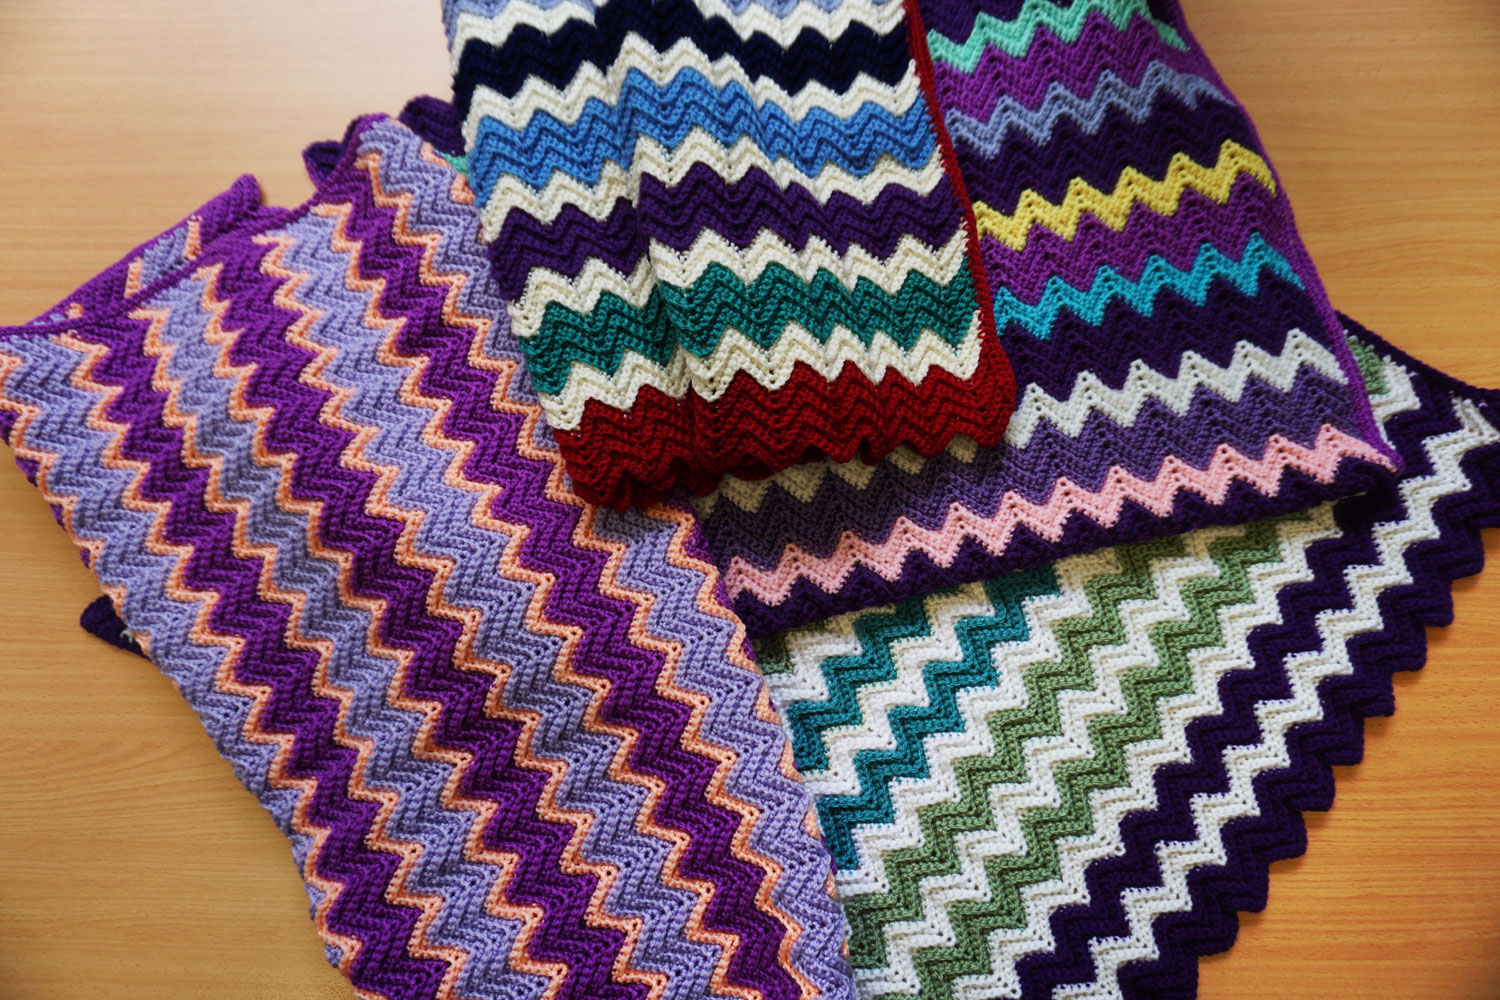 ZigZag crocheted pattern throws acrylic yarn